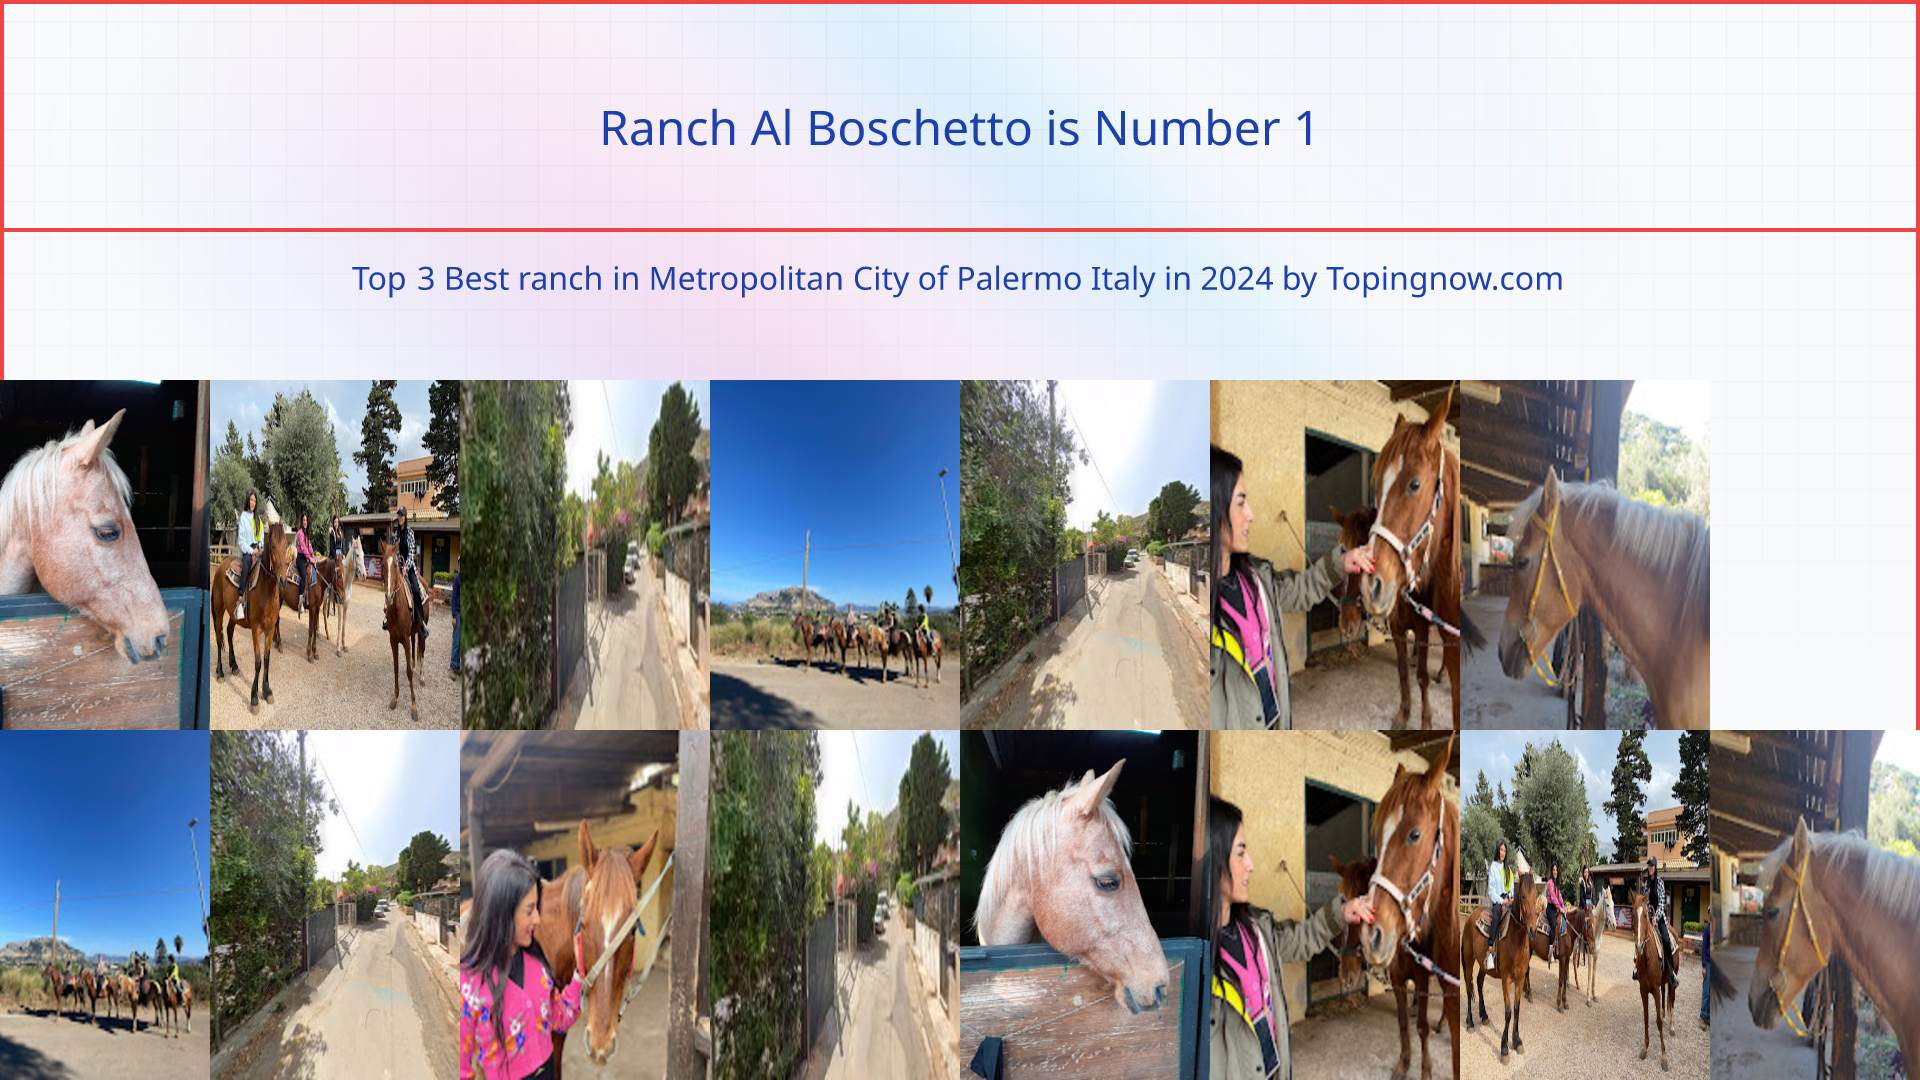 Ranch Al Boschetto: Top 3 Best ranch in Metropolitan City of Palermo Italy in 2024